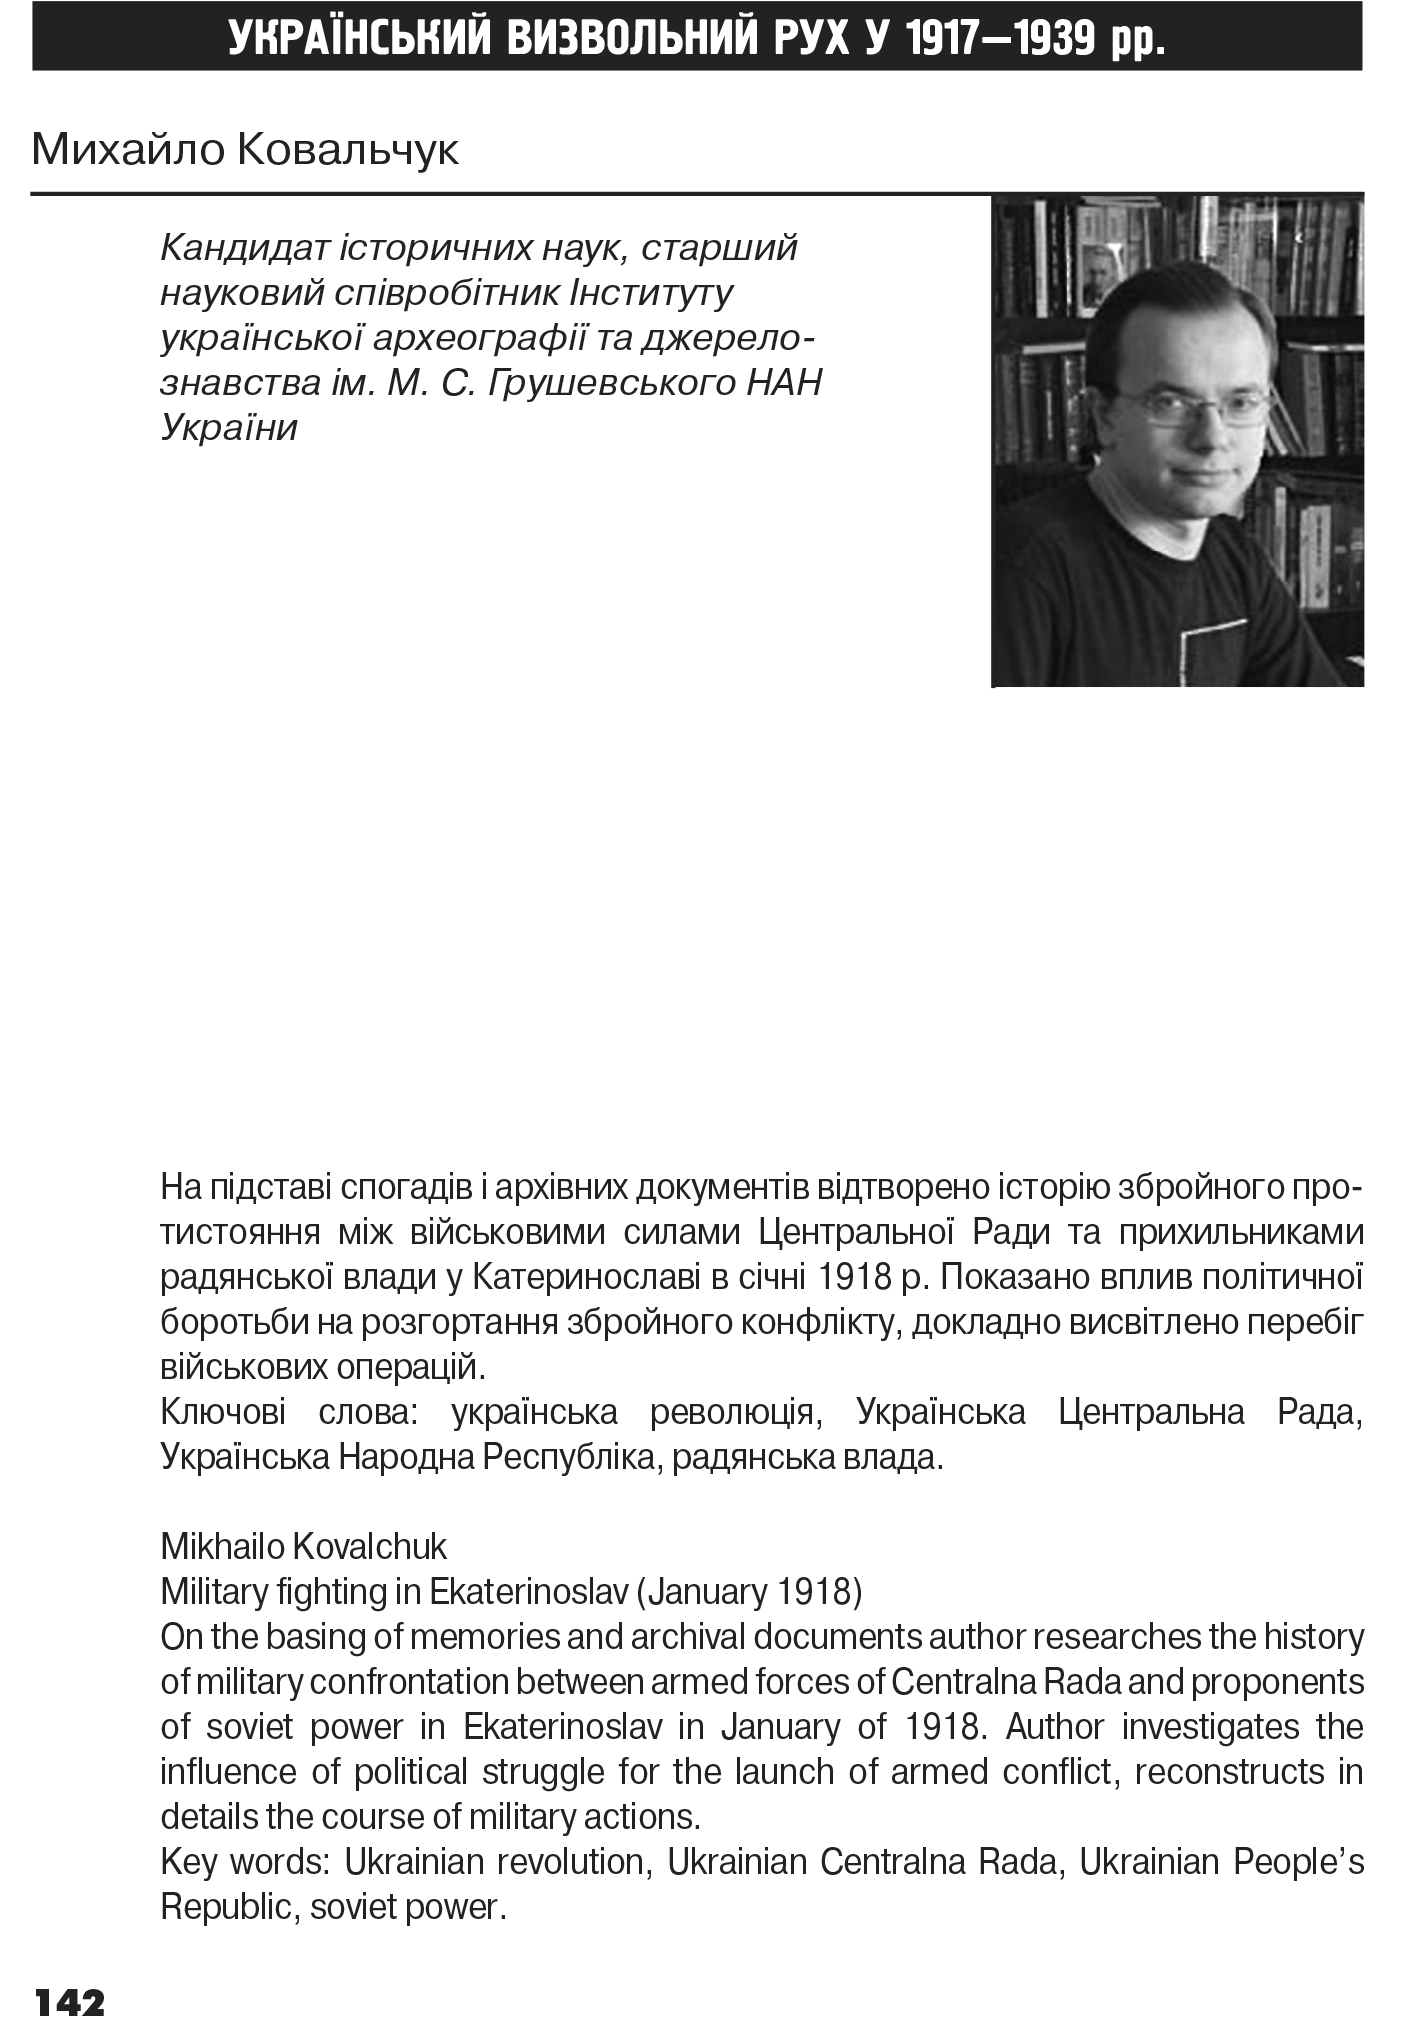 Український визвольний рух №19, ст. 142 - 173